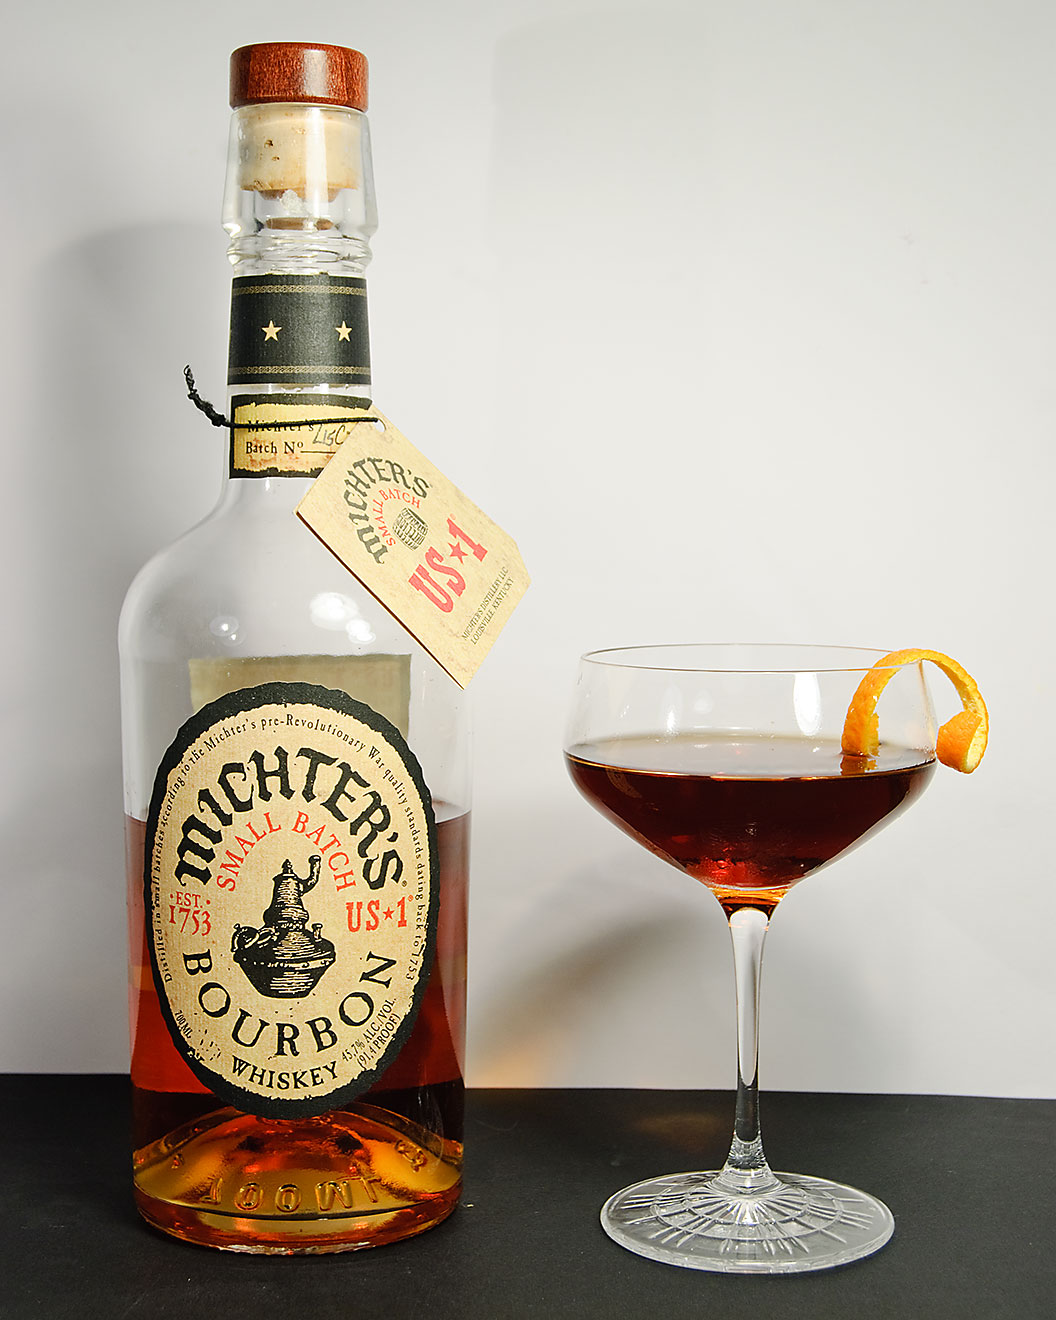 Michter's US *1 Small Batch Bourbon Whiskey in einem Revolver Cocktail mit Kaffeelikör und Orange Bitters. 